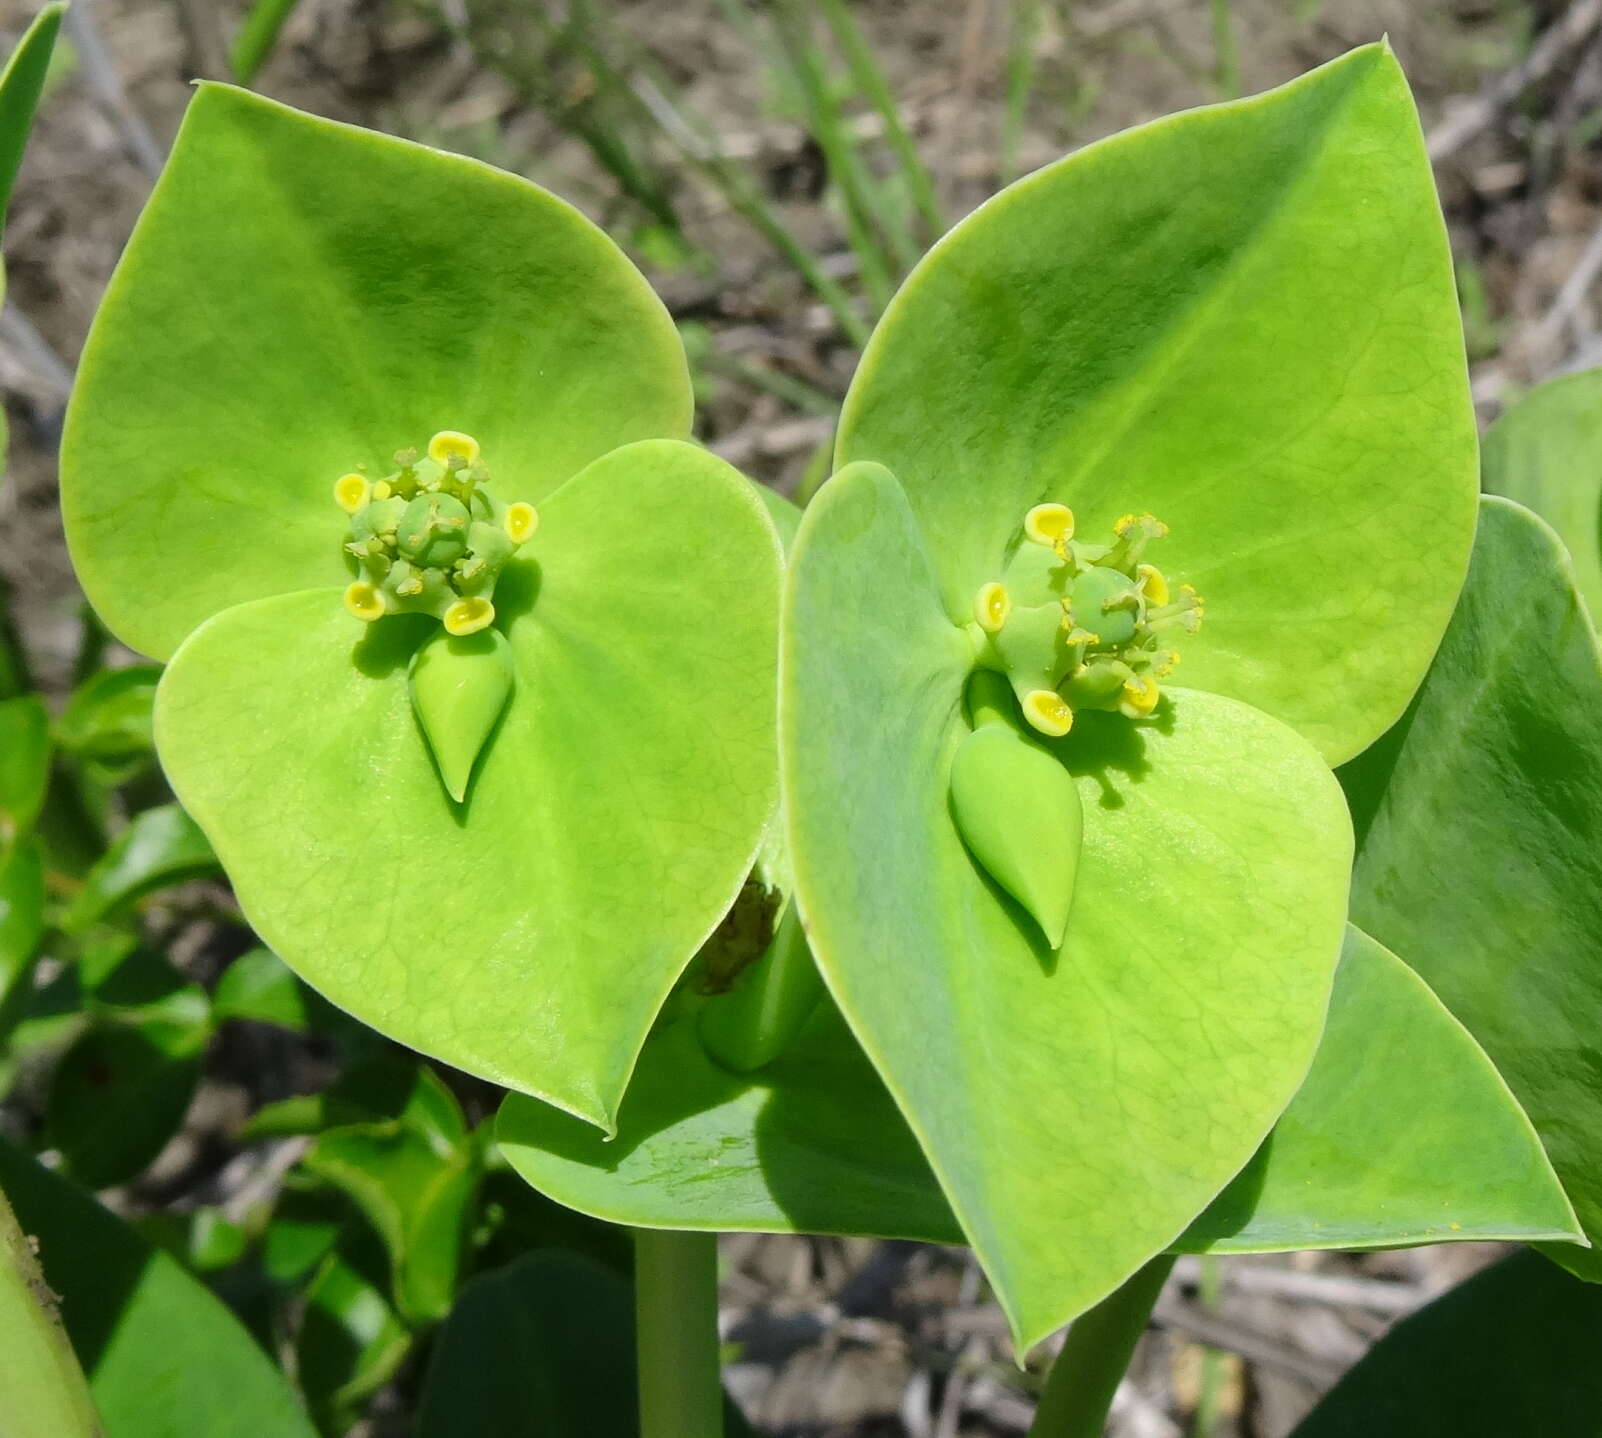 Sivun Euphorbia platycephala Pax kuva